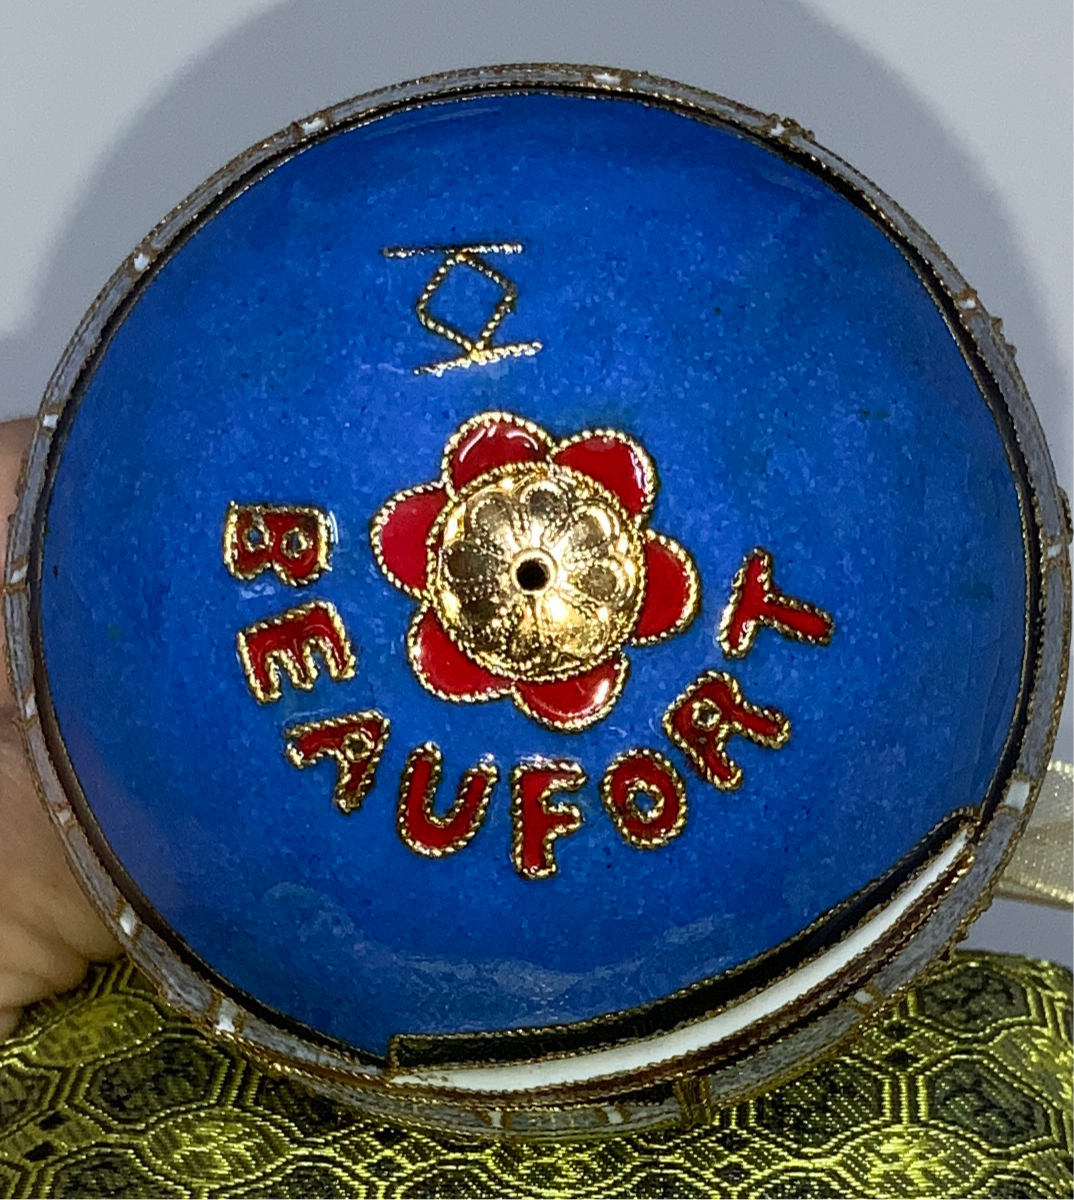 Beaufort Code Flags Cloisonne Ornament